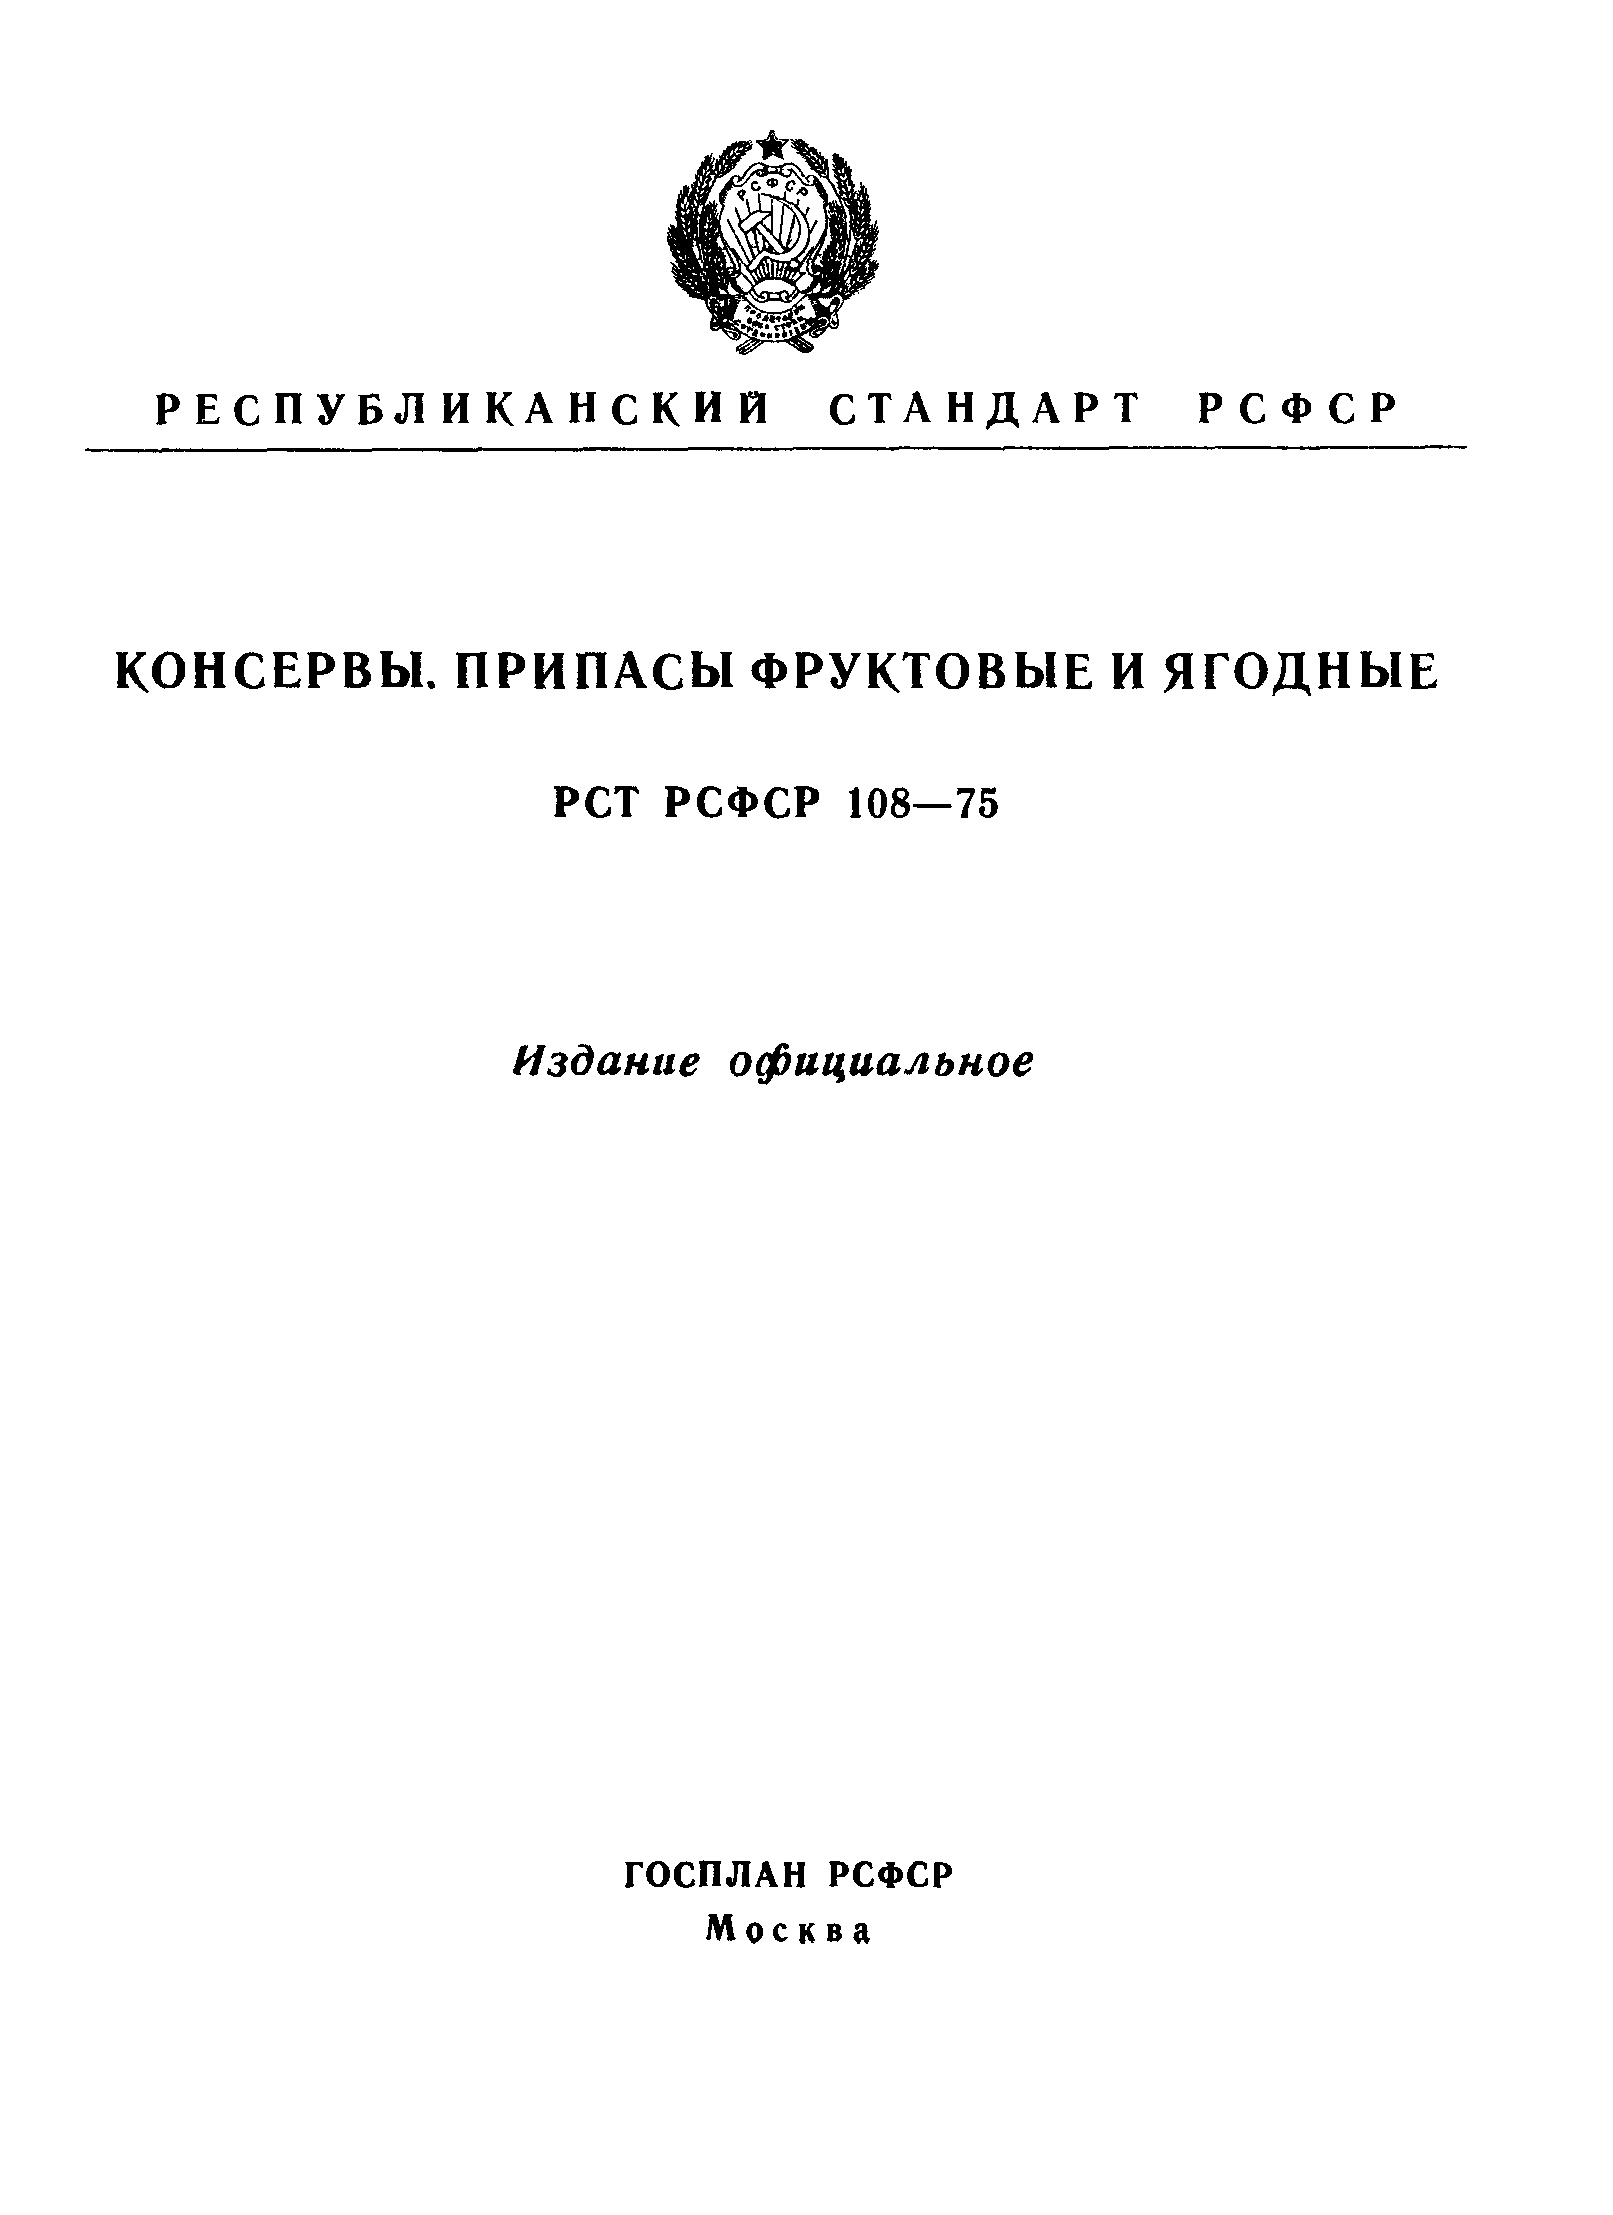 РСТ РСФСР 108-75